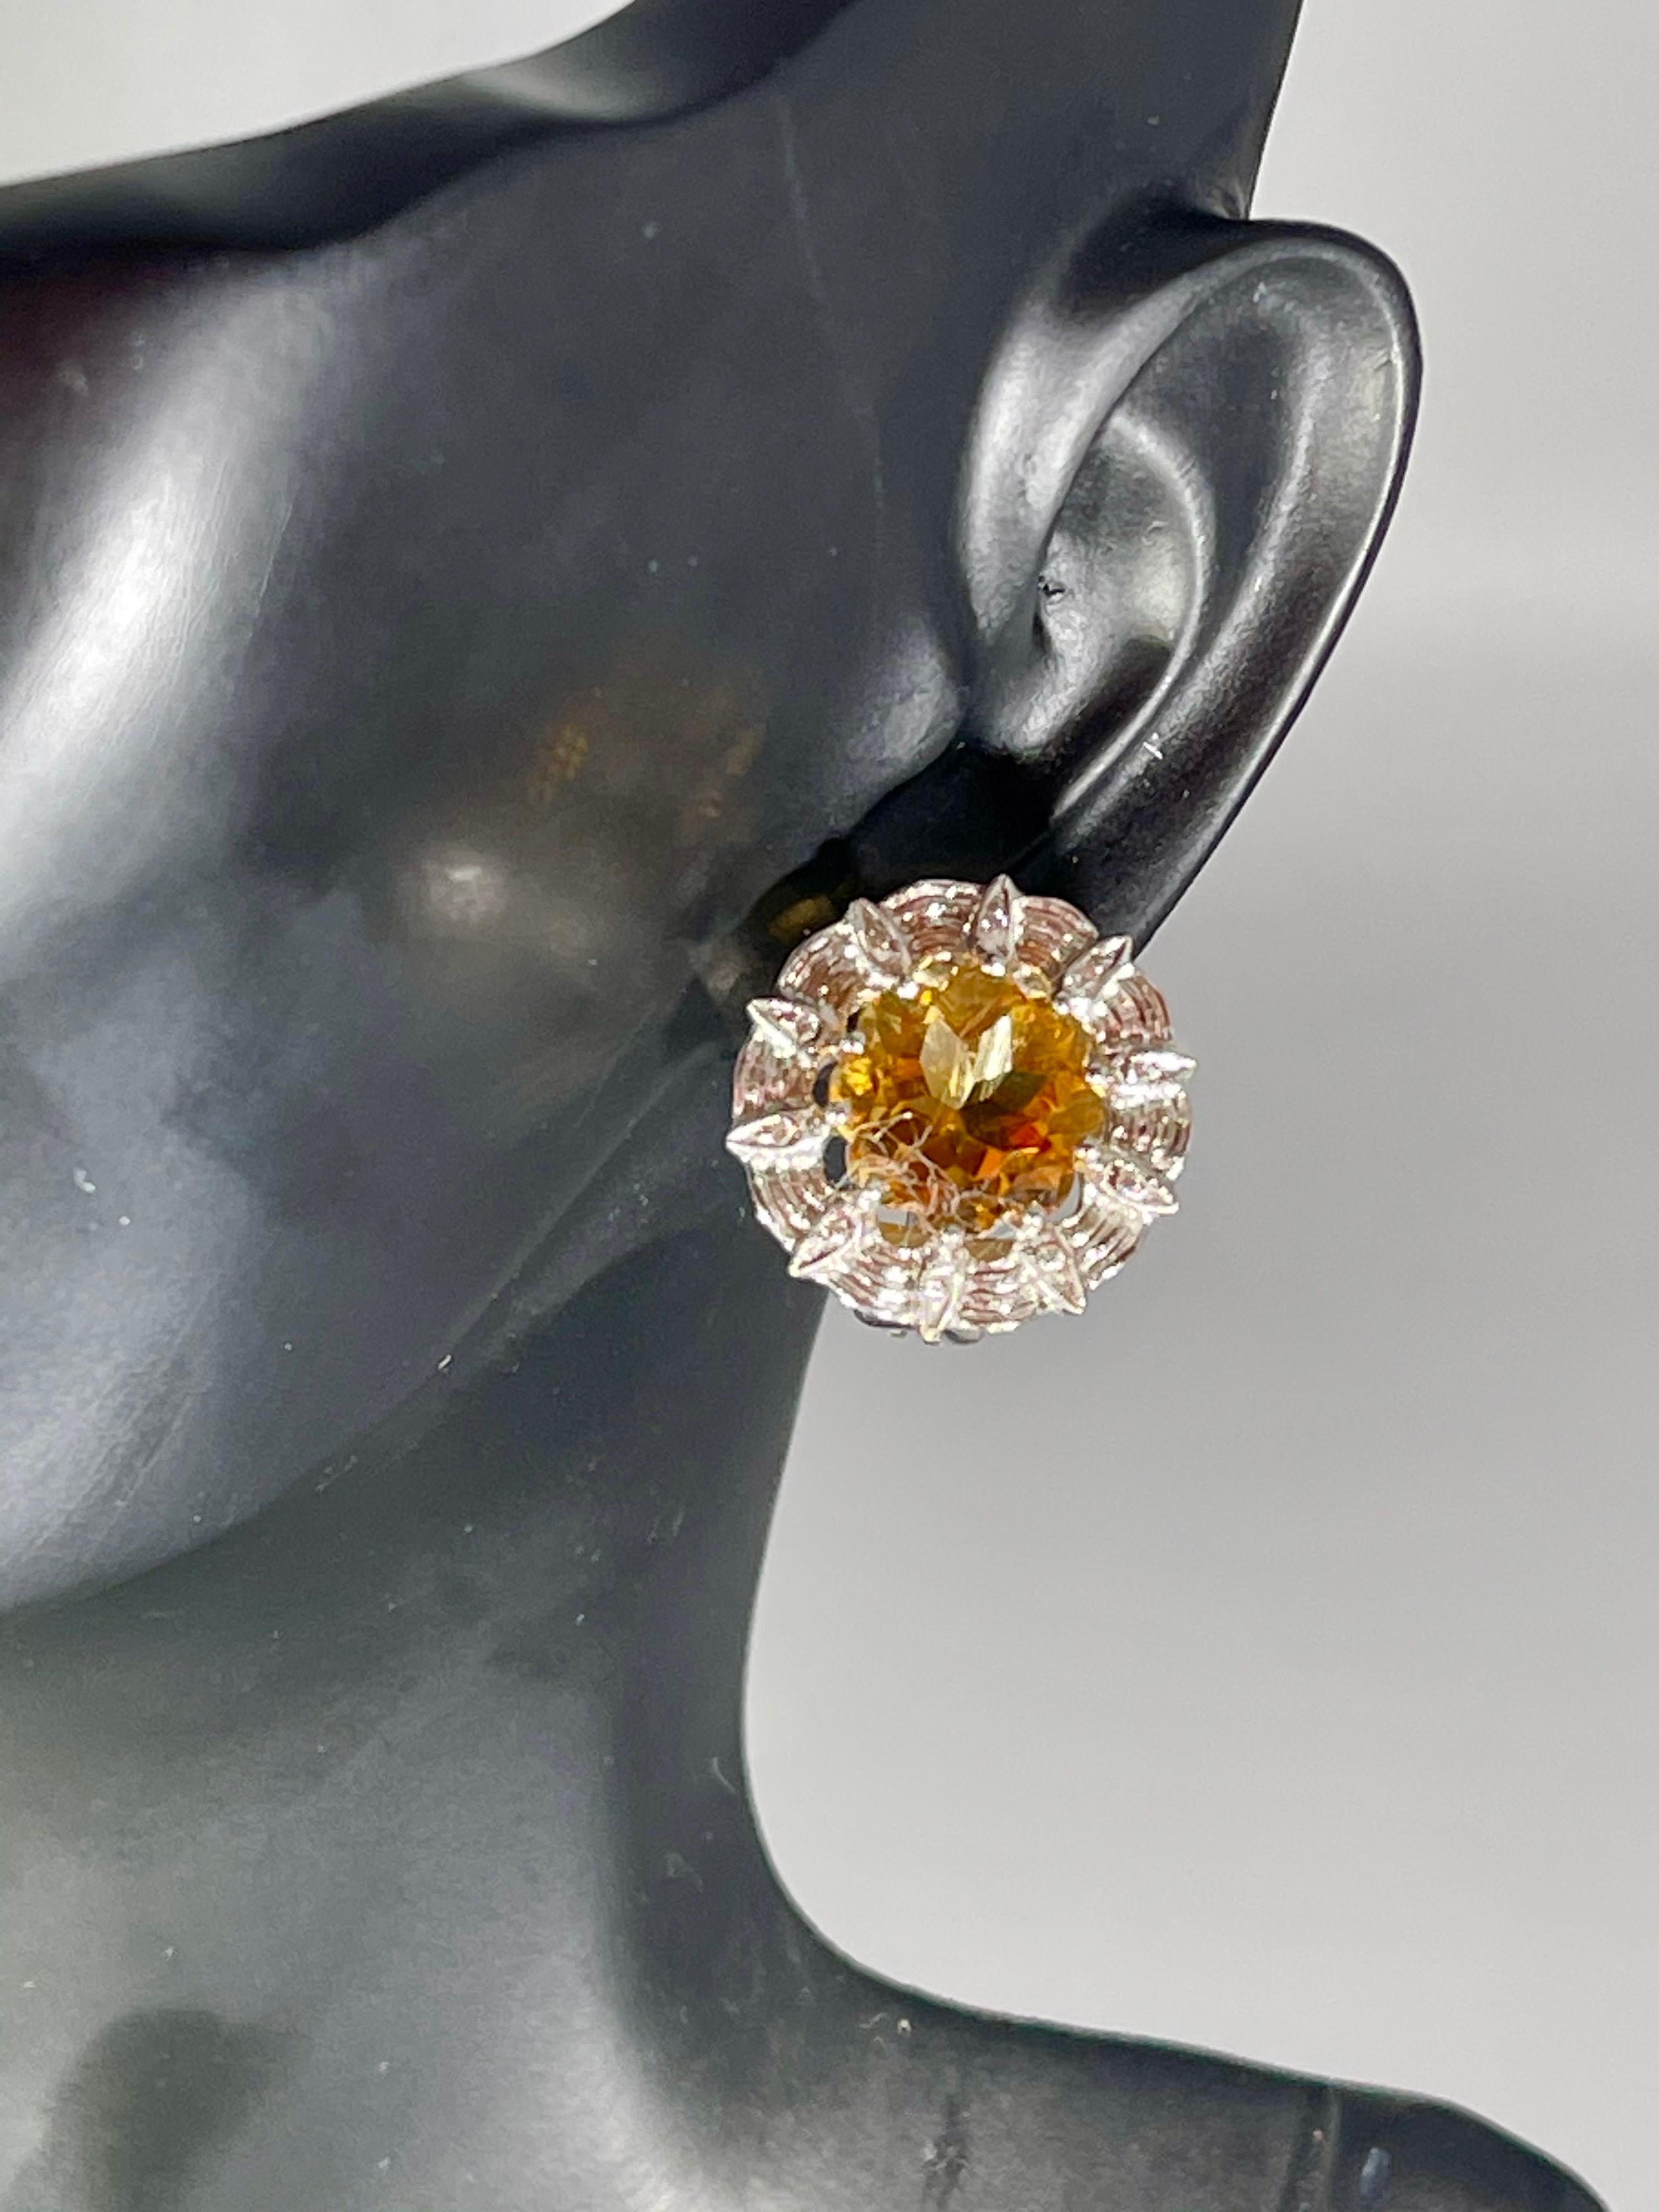 Königliches Styling aus unserer Kollektion, diese wunderschönen Ohrringe sind mit einem natürlichen runden Citrin in Zacken gefasst, umgeben von 18 Karat Weißgold mit winzigen Diamanten. Das Gehäuse aus 18 Karat Gold ist mit einigen Diamanten im